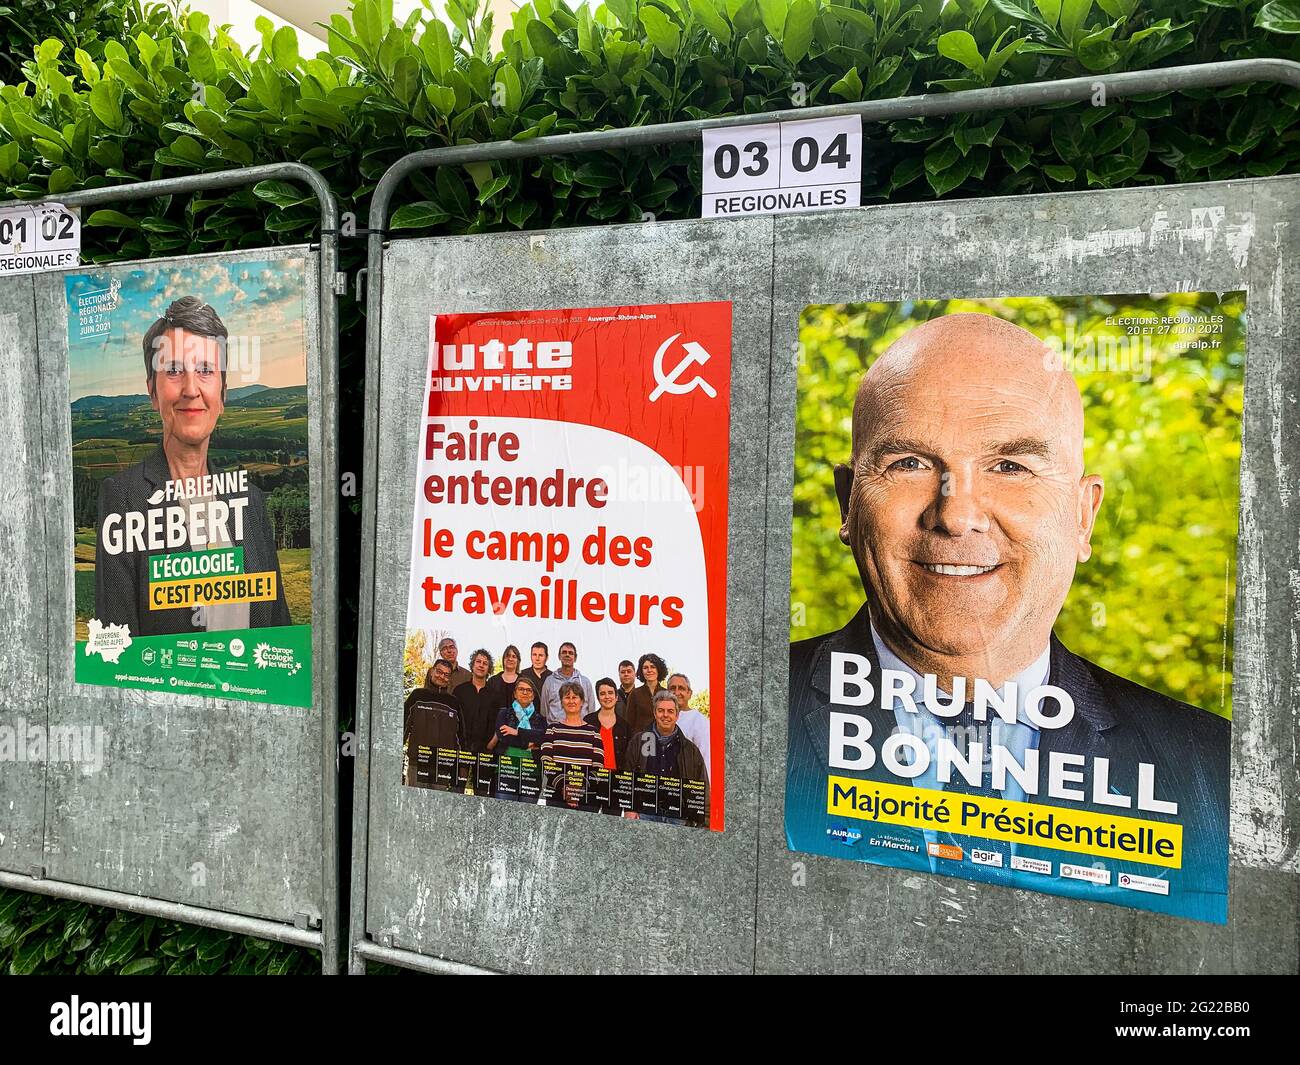 Élections régionales dans la région DE L'AURA, Bron, France Banque D'Images